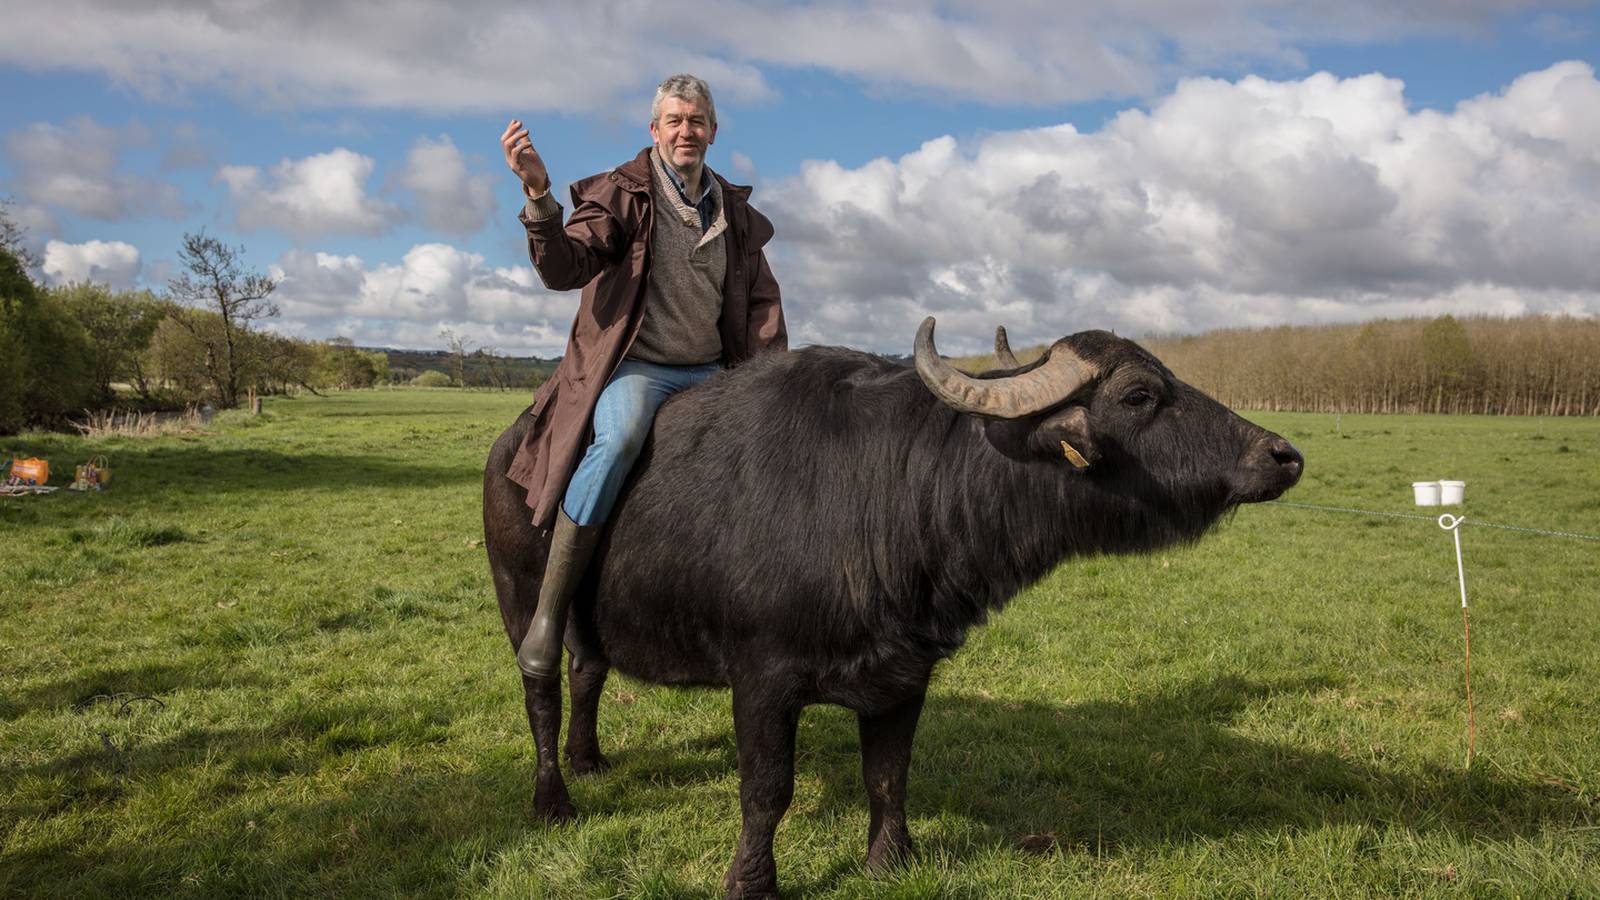 Chuyện một người "điên" ở Ireland nuôi trâu vắt sữa